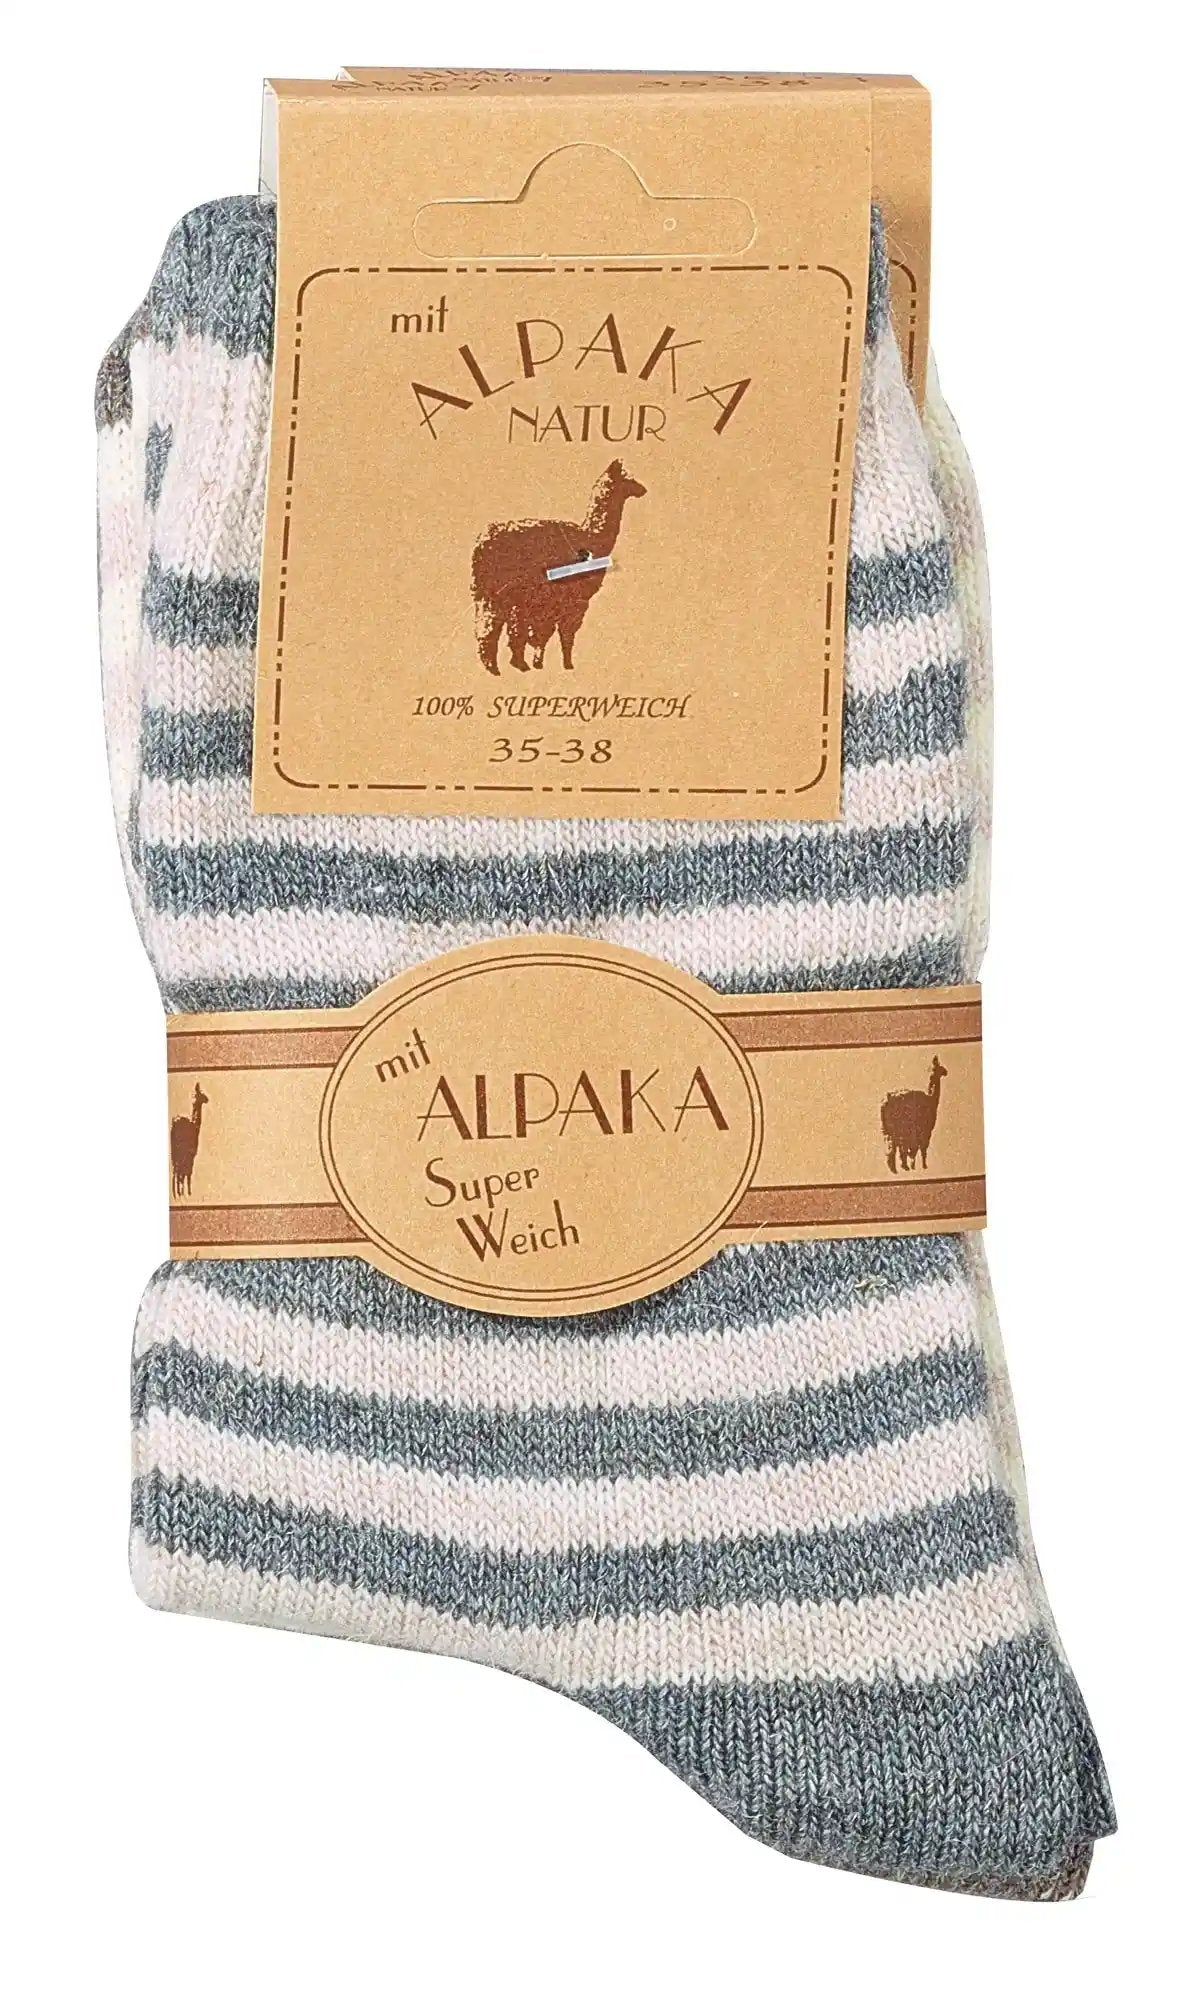 2 pares de calcetines de alpaca con lana de alpaca para niños, jóvenes y mujeres.